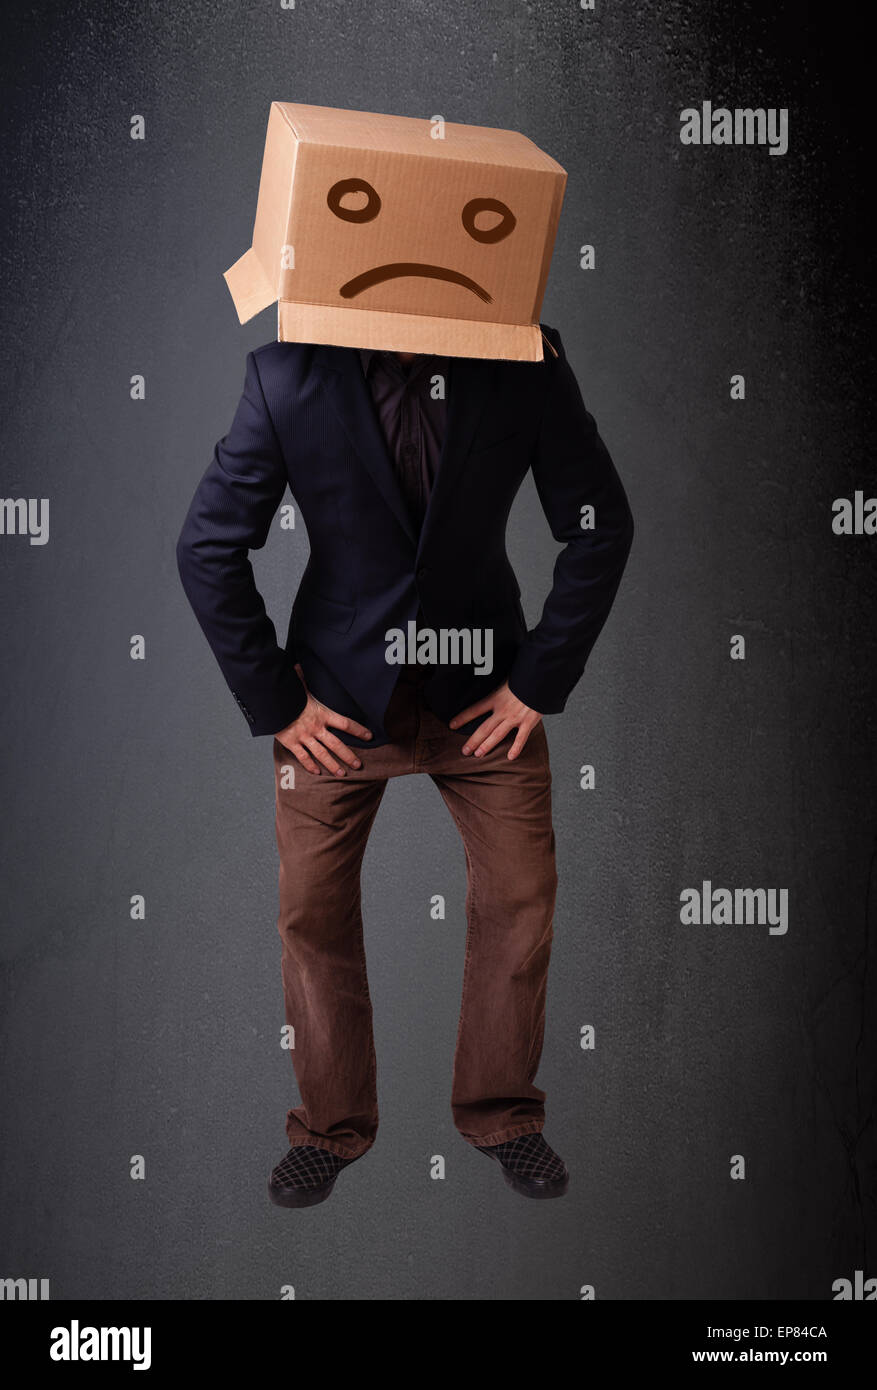 Jeune homme brun avec une boîte en carton sur la tête avec visage triste Banque D'Images